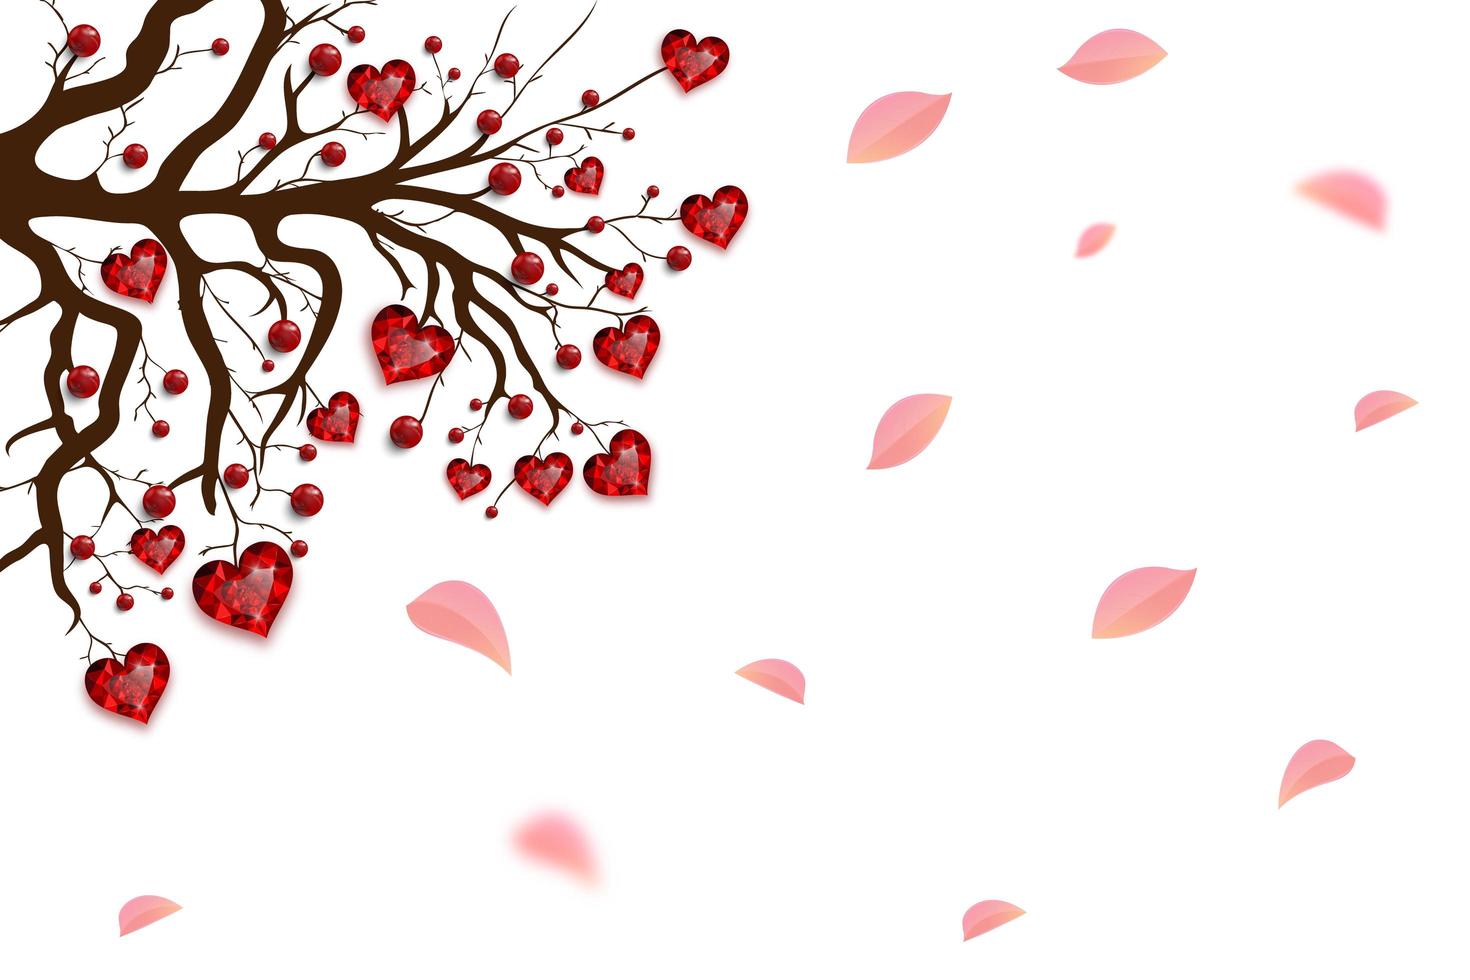 feliz Dia dos namorados. árvore decorada com miçangas e corações vermelhos. joia de rubi. cartão do dia dos namorados. vetor